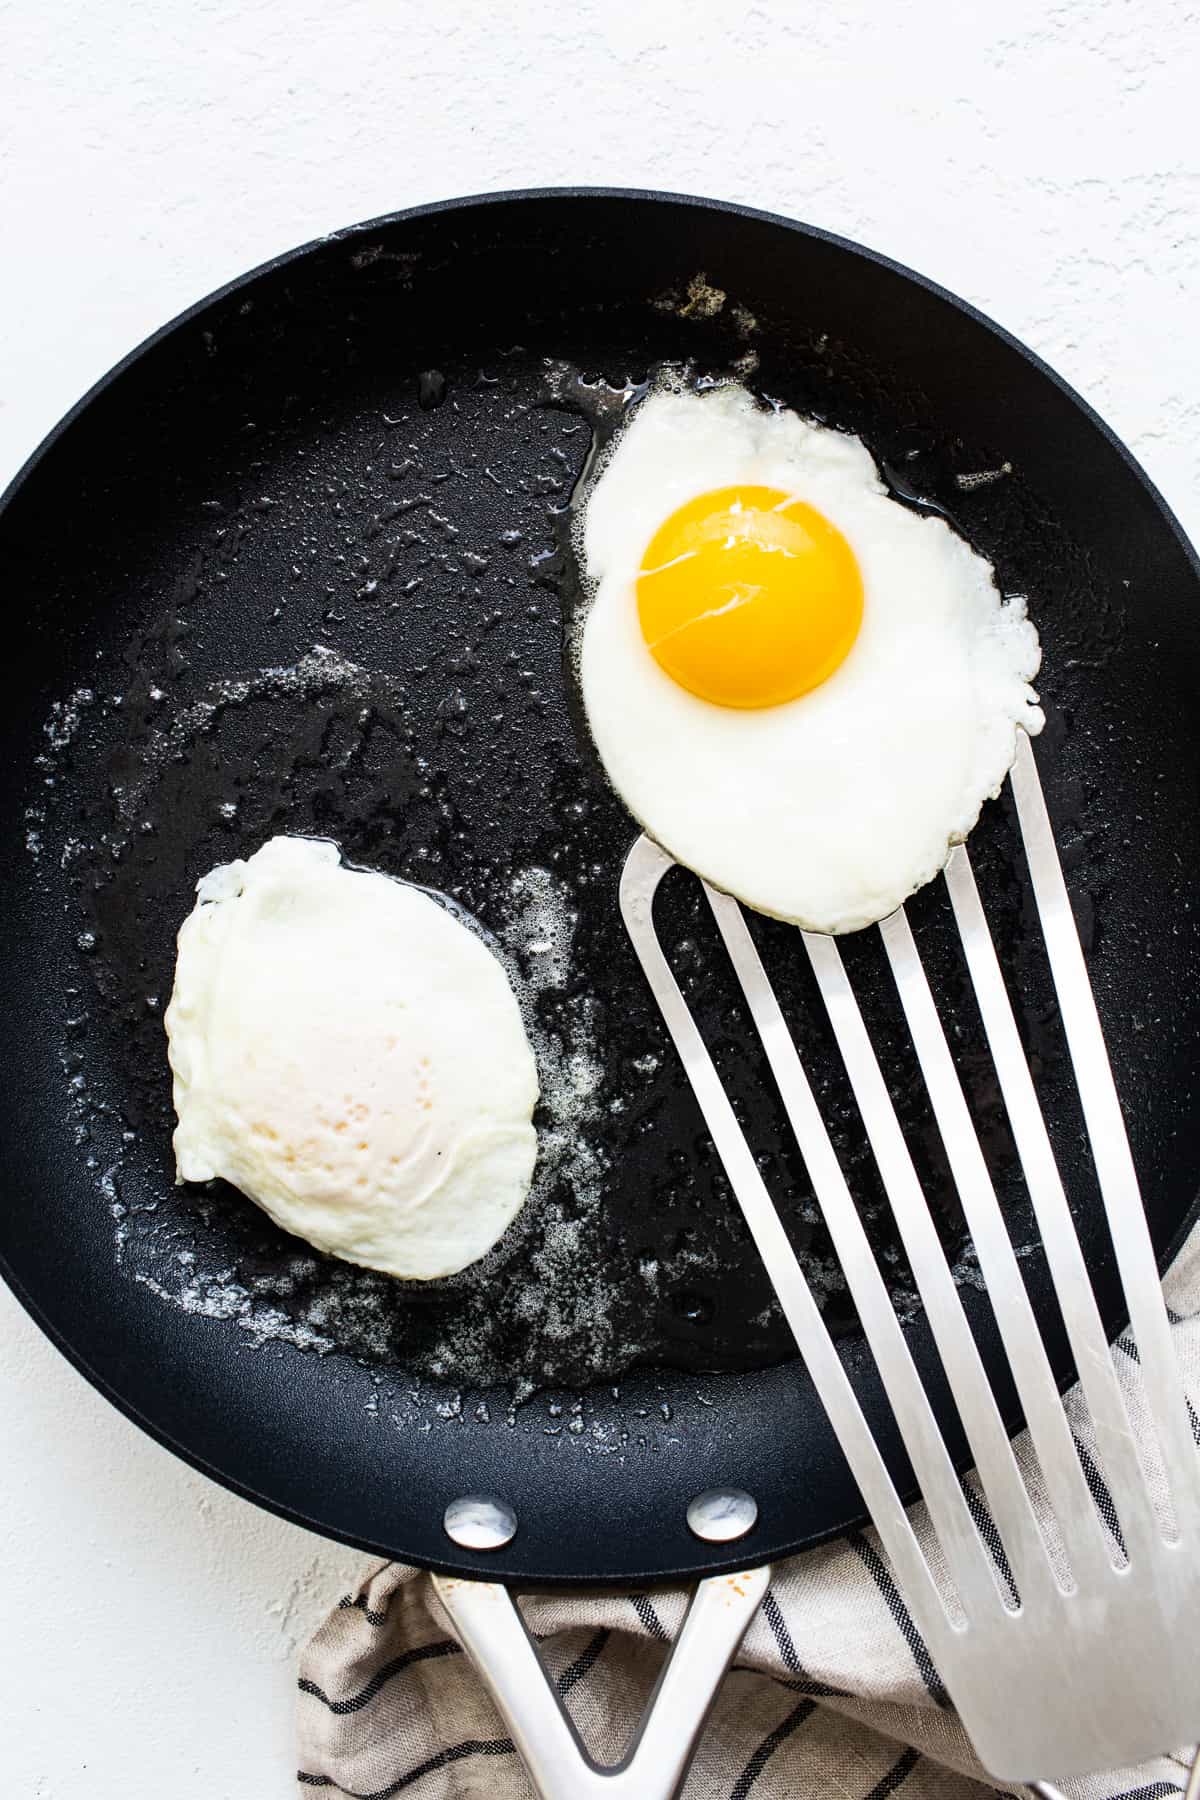 پختن تخم مرغ در تابه.